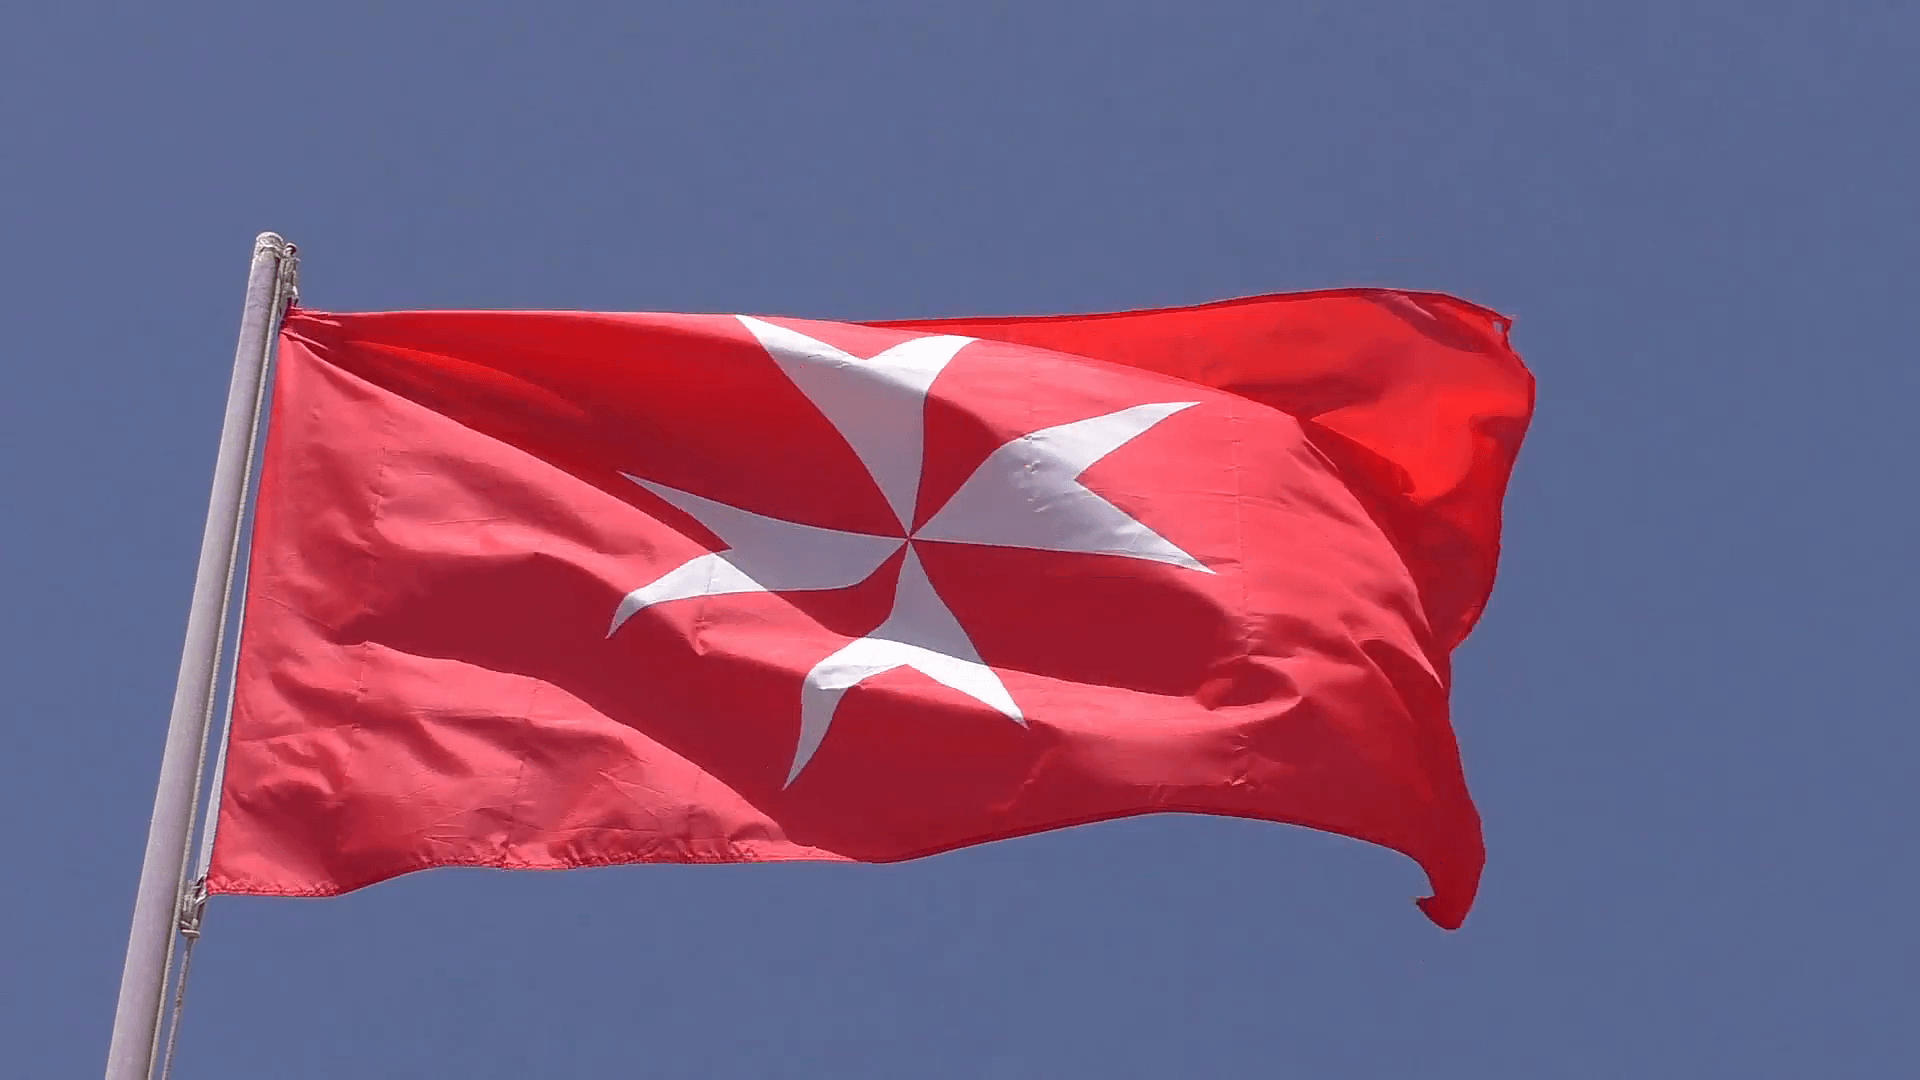 White Maltese cross on red background flag, the national flag